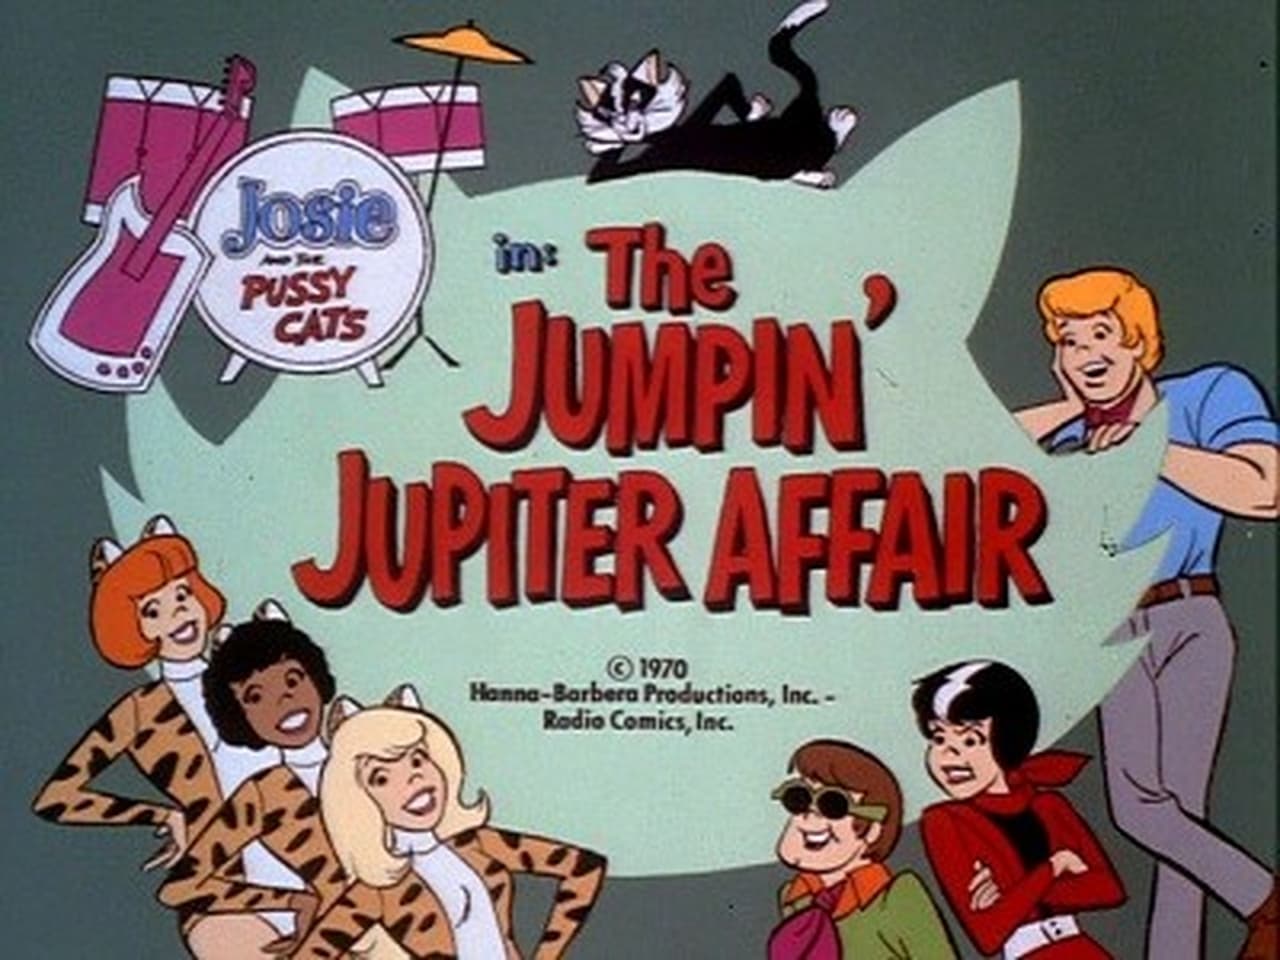 The Jumpin Jupiter Affair